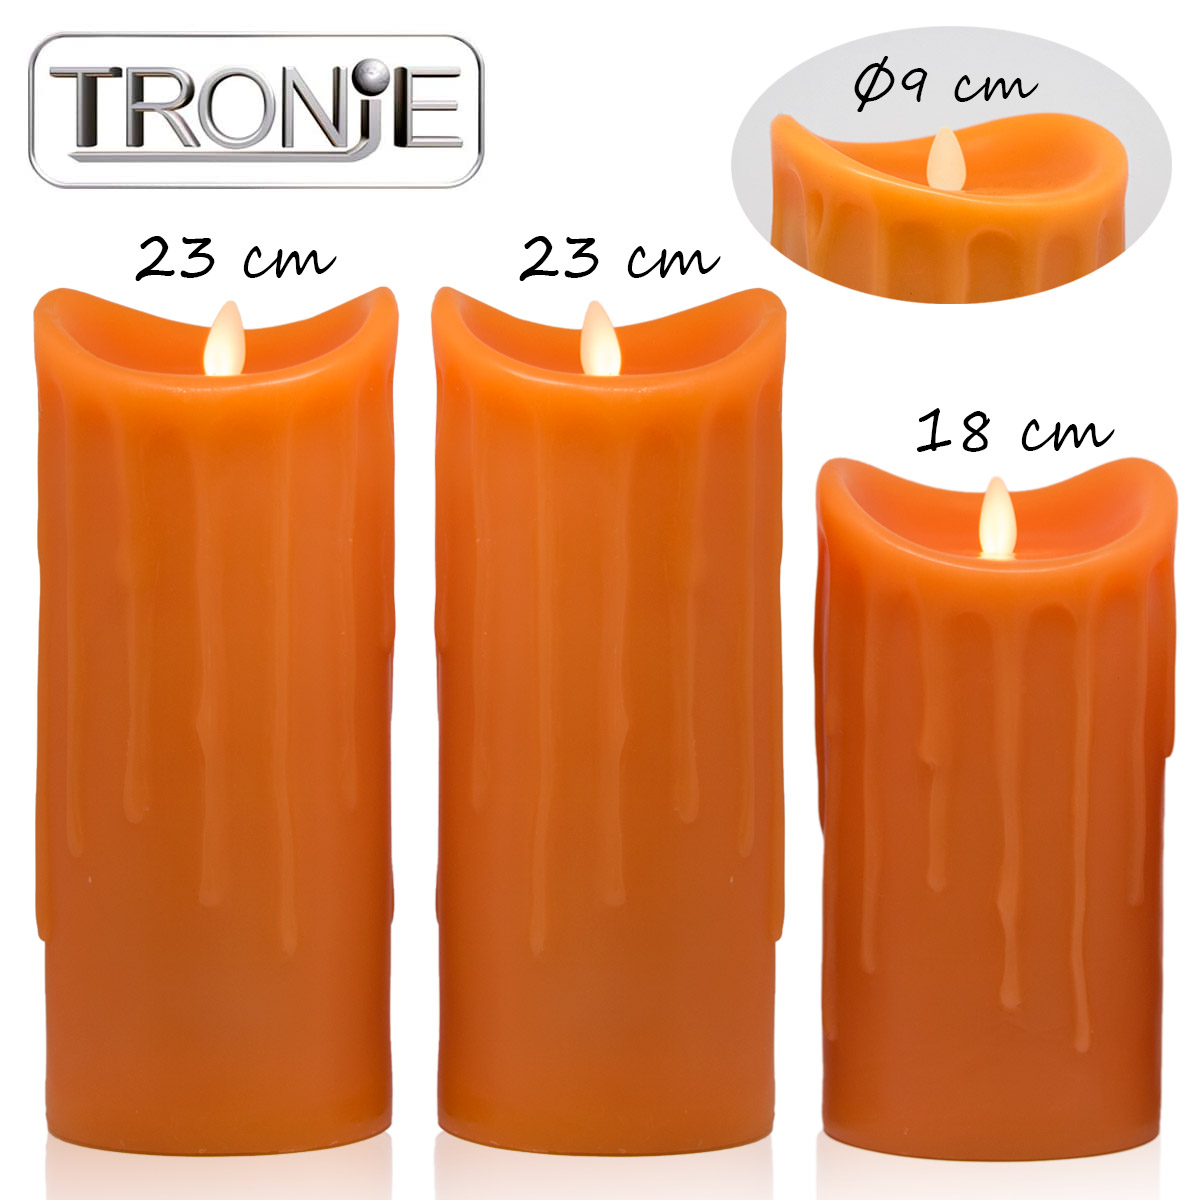 LED-Echtwachskerzen, 3er Set, Orange, 18cm + 23cm + 23cm, Wachstropfendesign